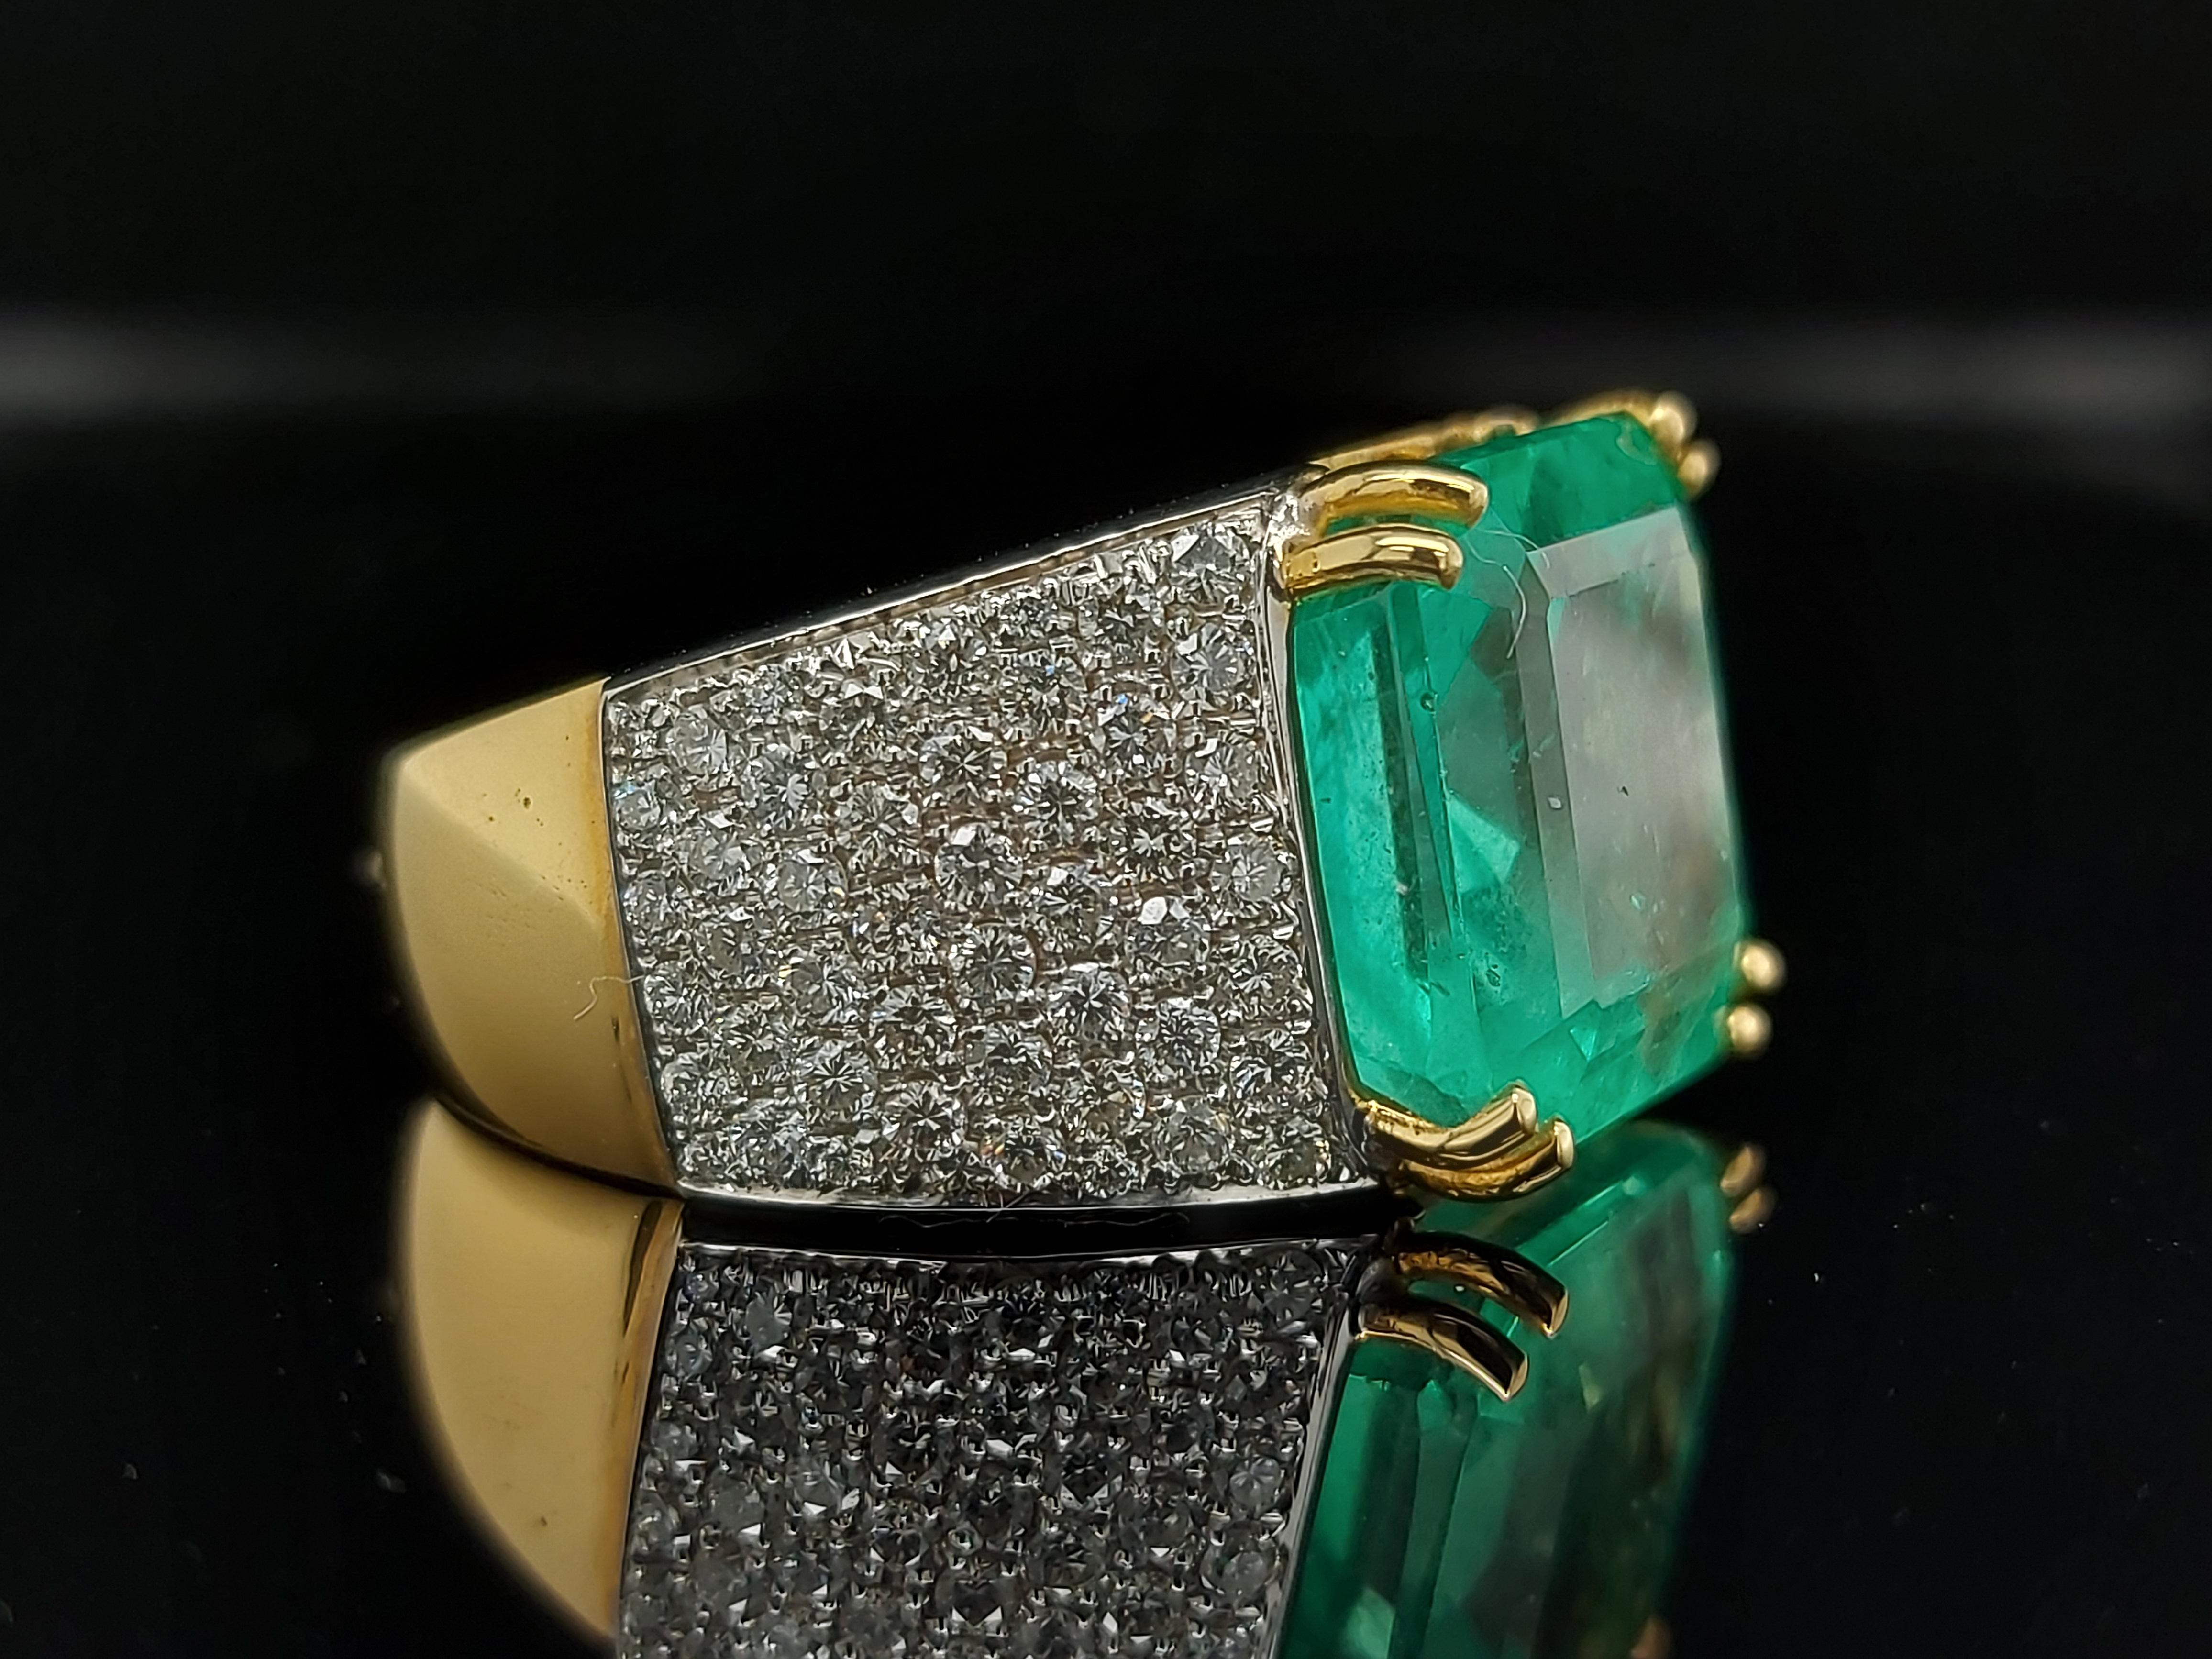 Beeindruckender Ring aus massivem 18-karätigem Gold mit einem großen kolumbianischen Smaragd von 11,11 Karat und Diamanten im Brillantschliff von 1,64 Karat.

Ein wunderschönes handgefertigtes Schmuckstück, das Sie Tag für Tag erleuchtet

Smaragd: